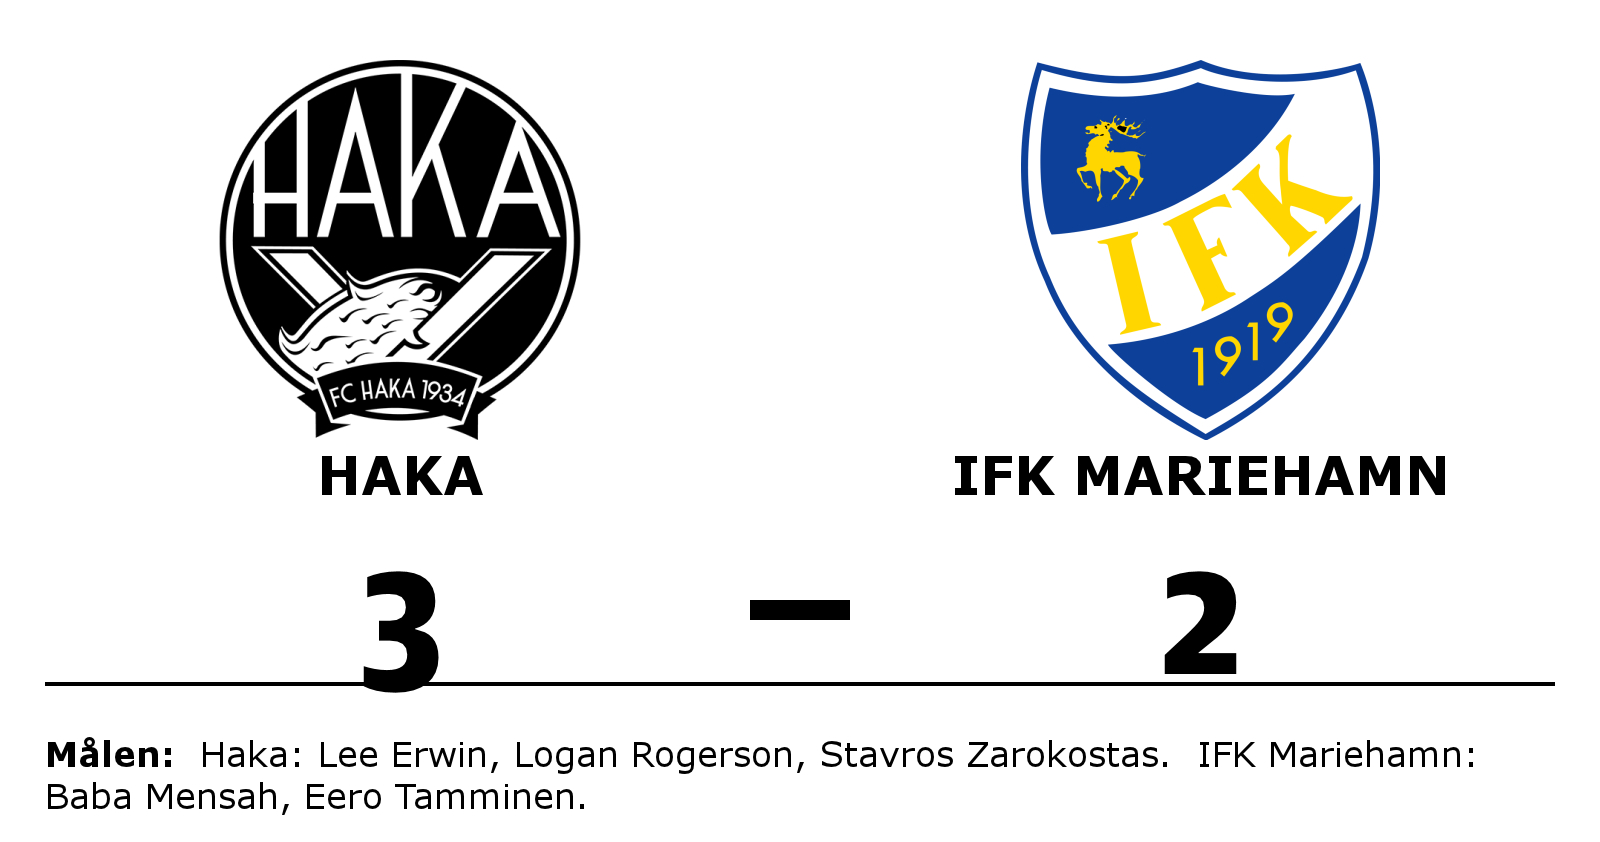 Haka vann mot IFK Mariehamn